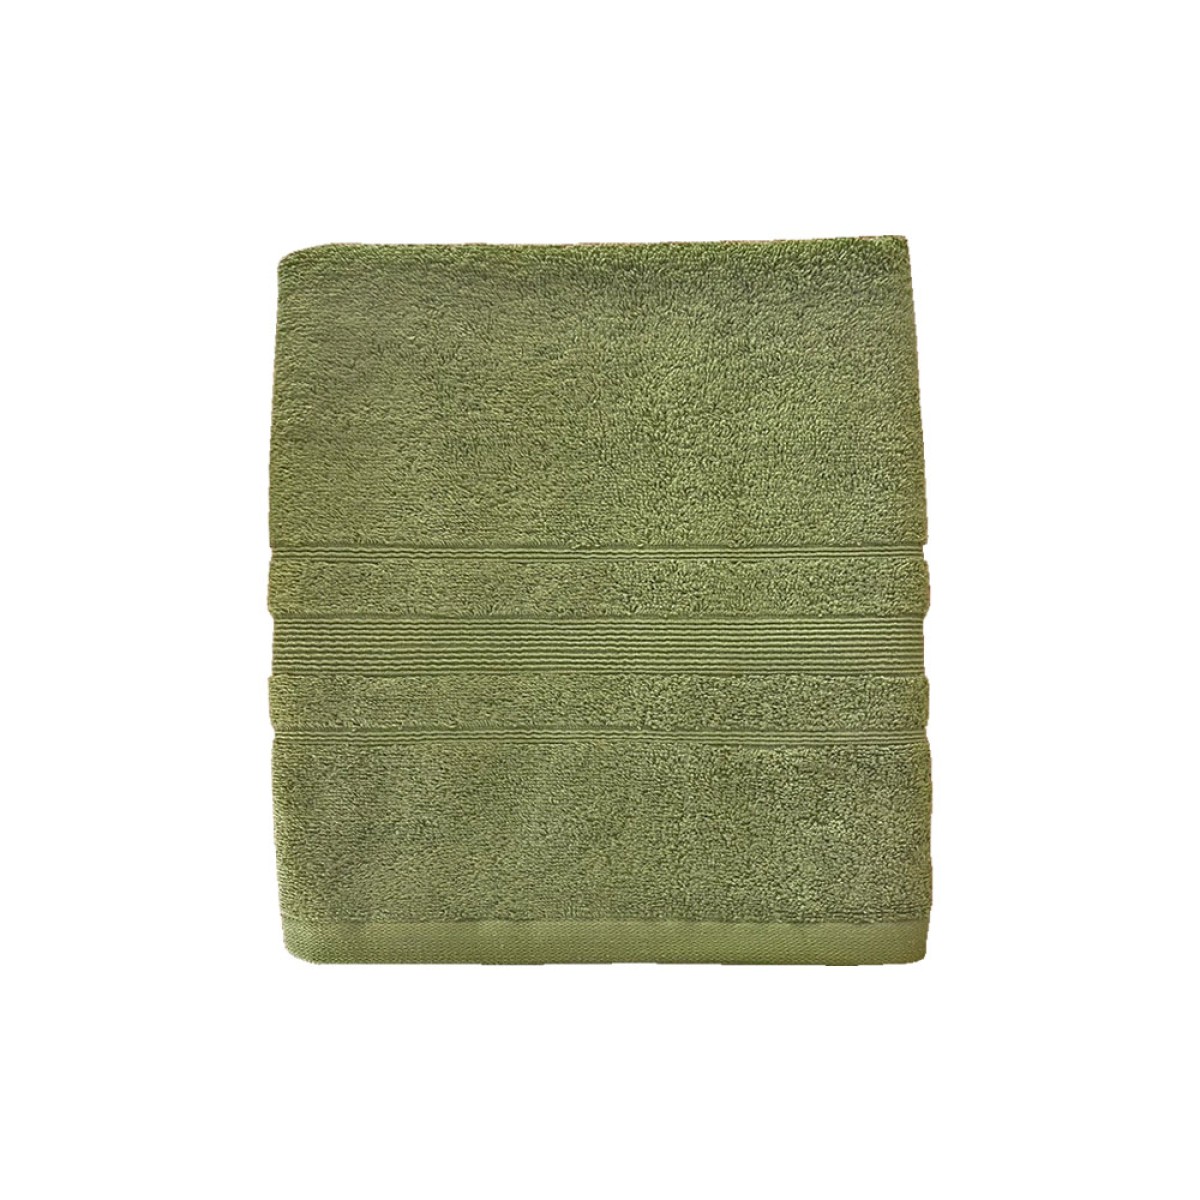 Πετσέτα Προσώπου 550grs (50x90) 100% Βαμβάκι με μπορντούρα με ανάγλυφο σχέδιο λαδί χρώμα Sidirela Line E-3202-1